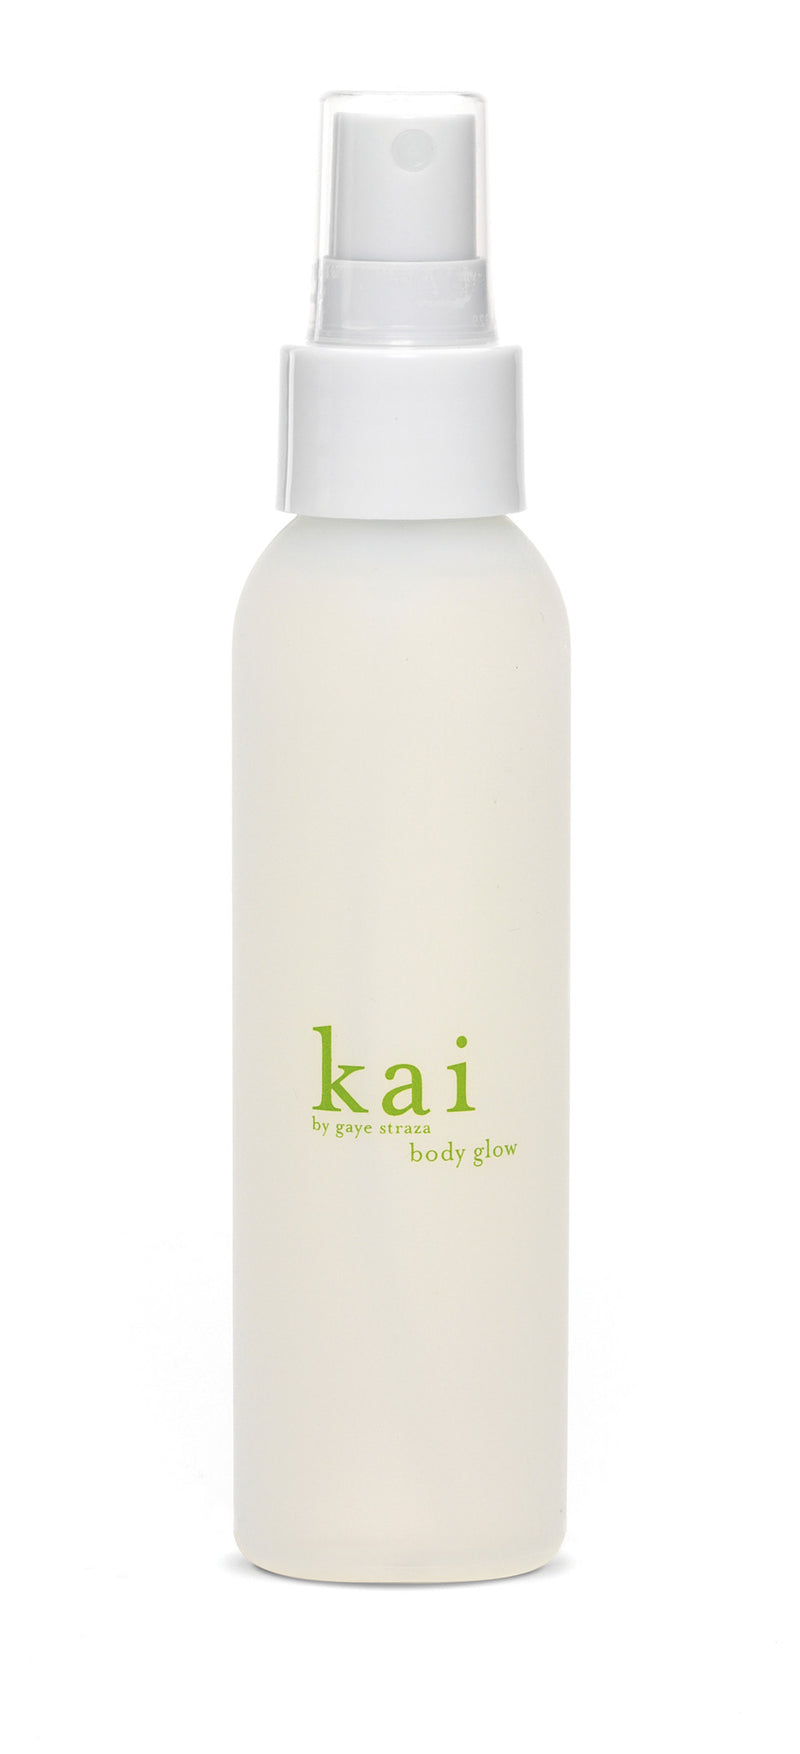 media image for kai body glow design by kai fragrance 1 28